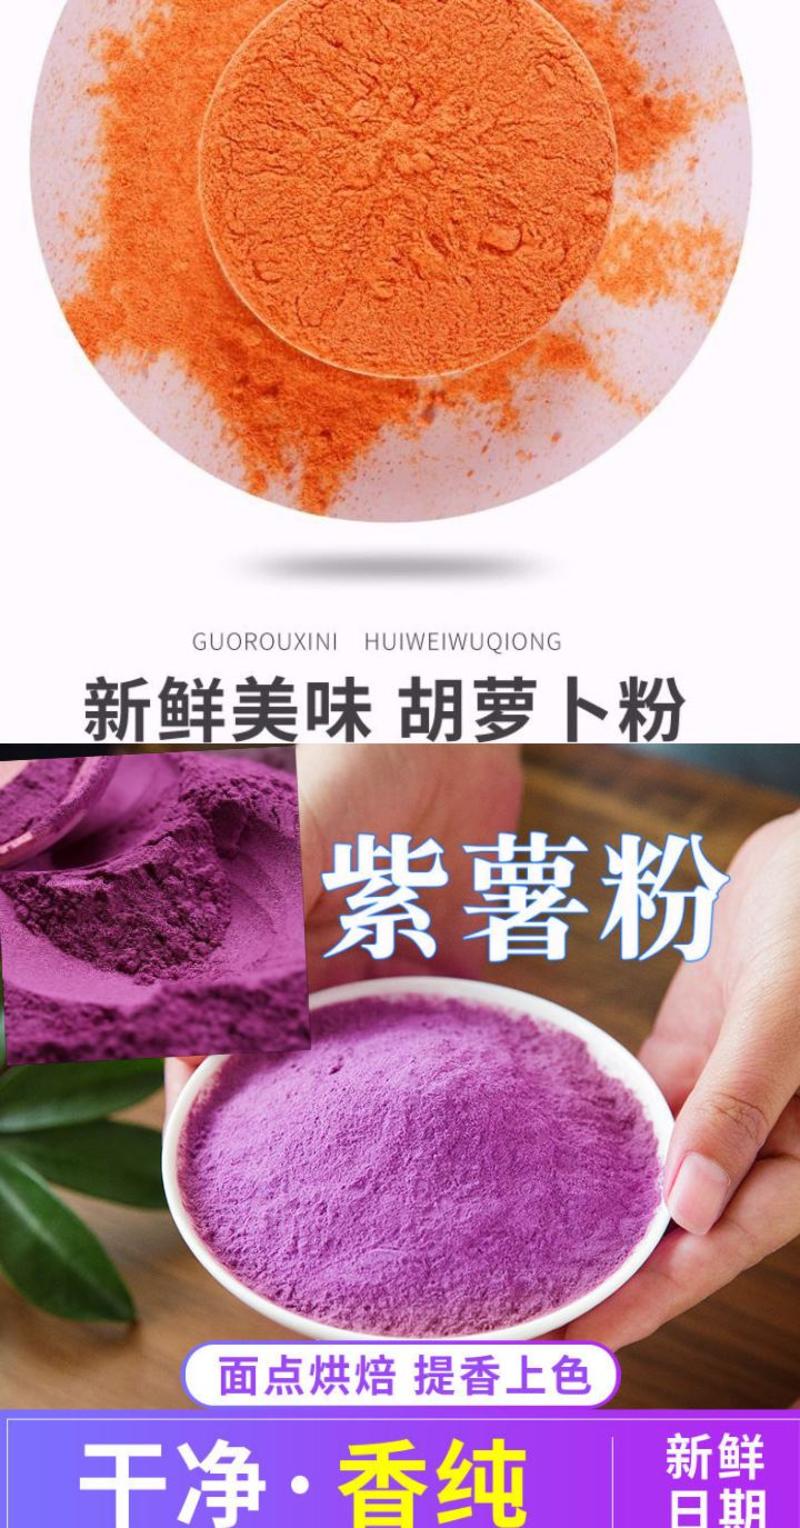 果蔬粉纯果蔬粉上色粉馒头饺子包子饼上色粉5斤装包邮